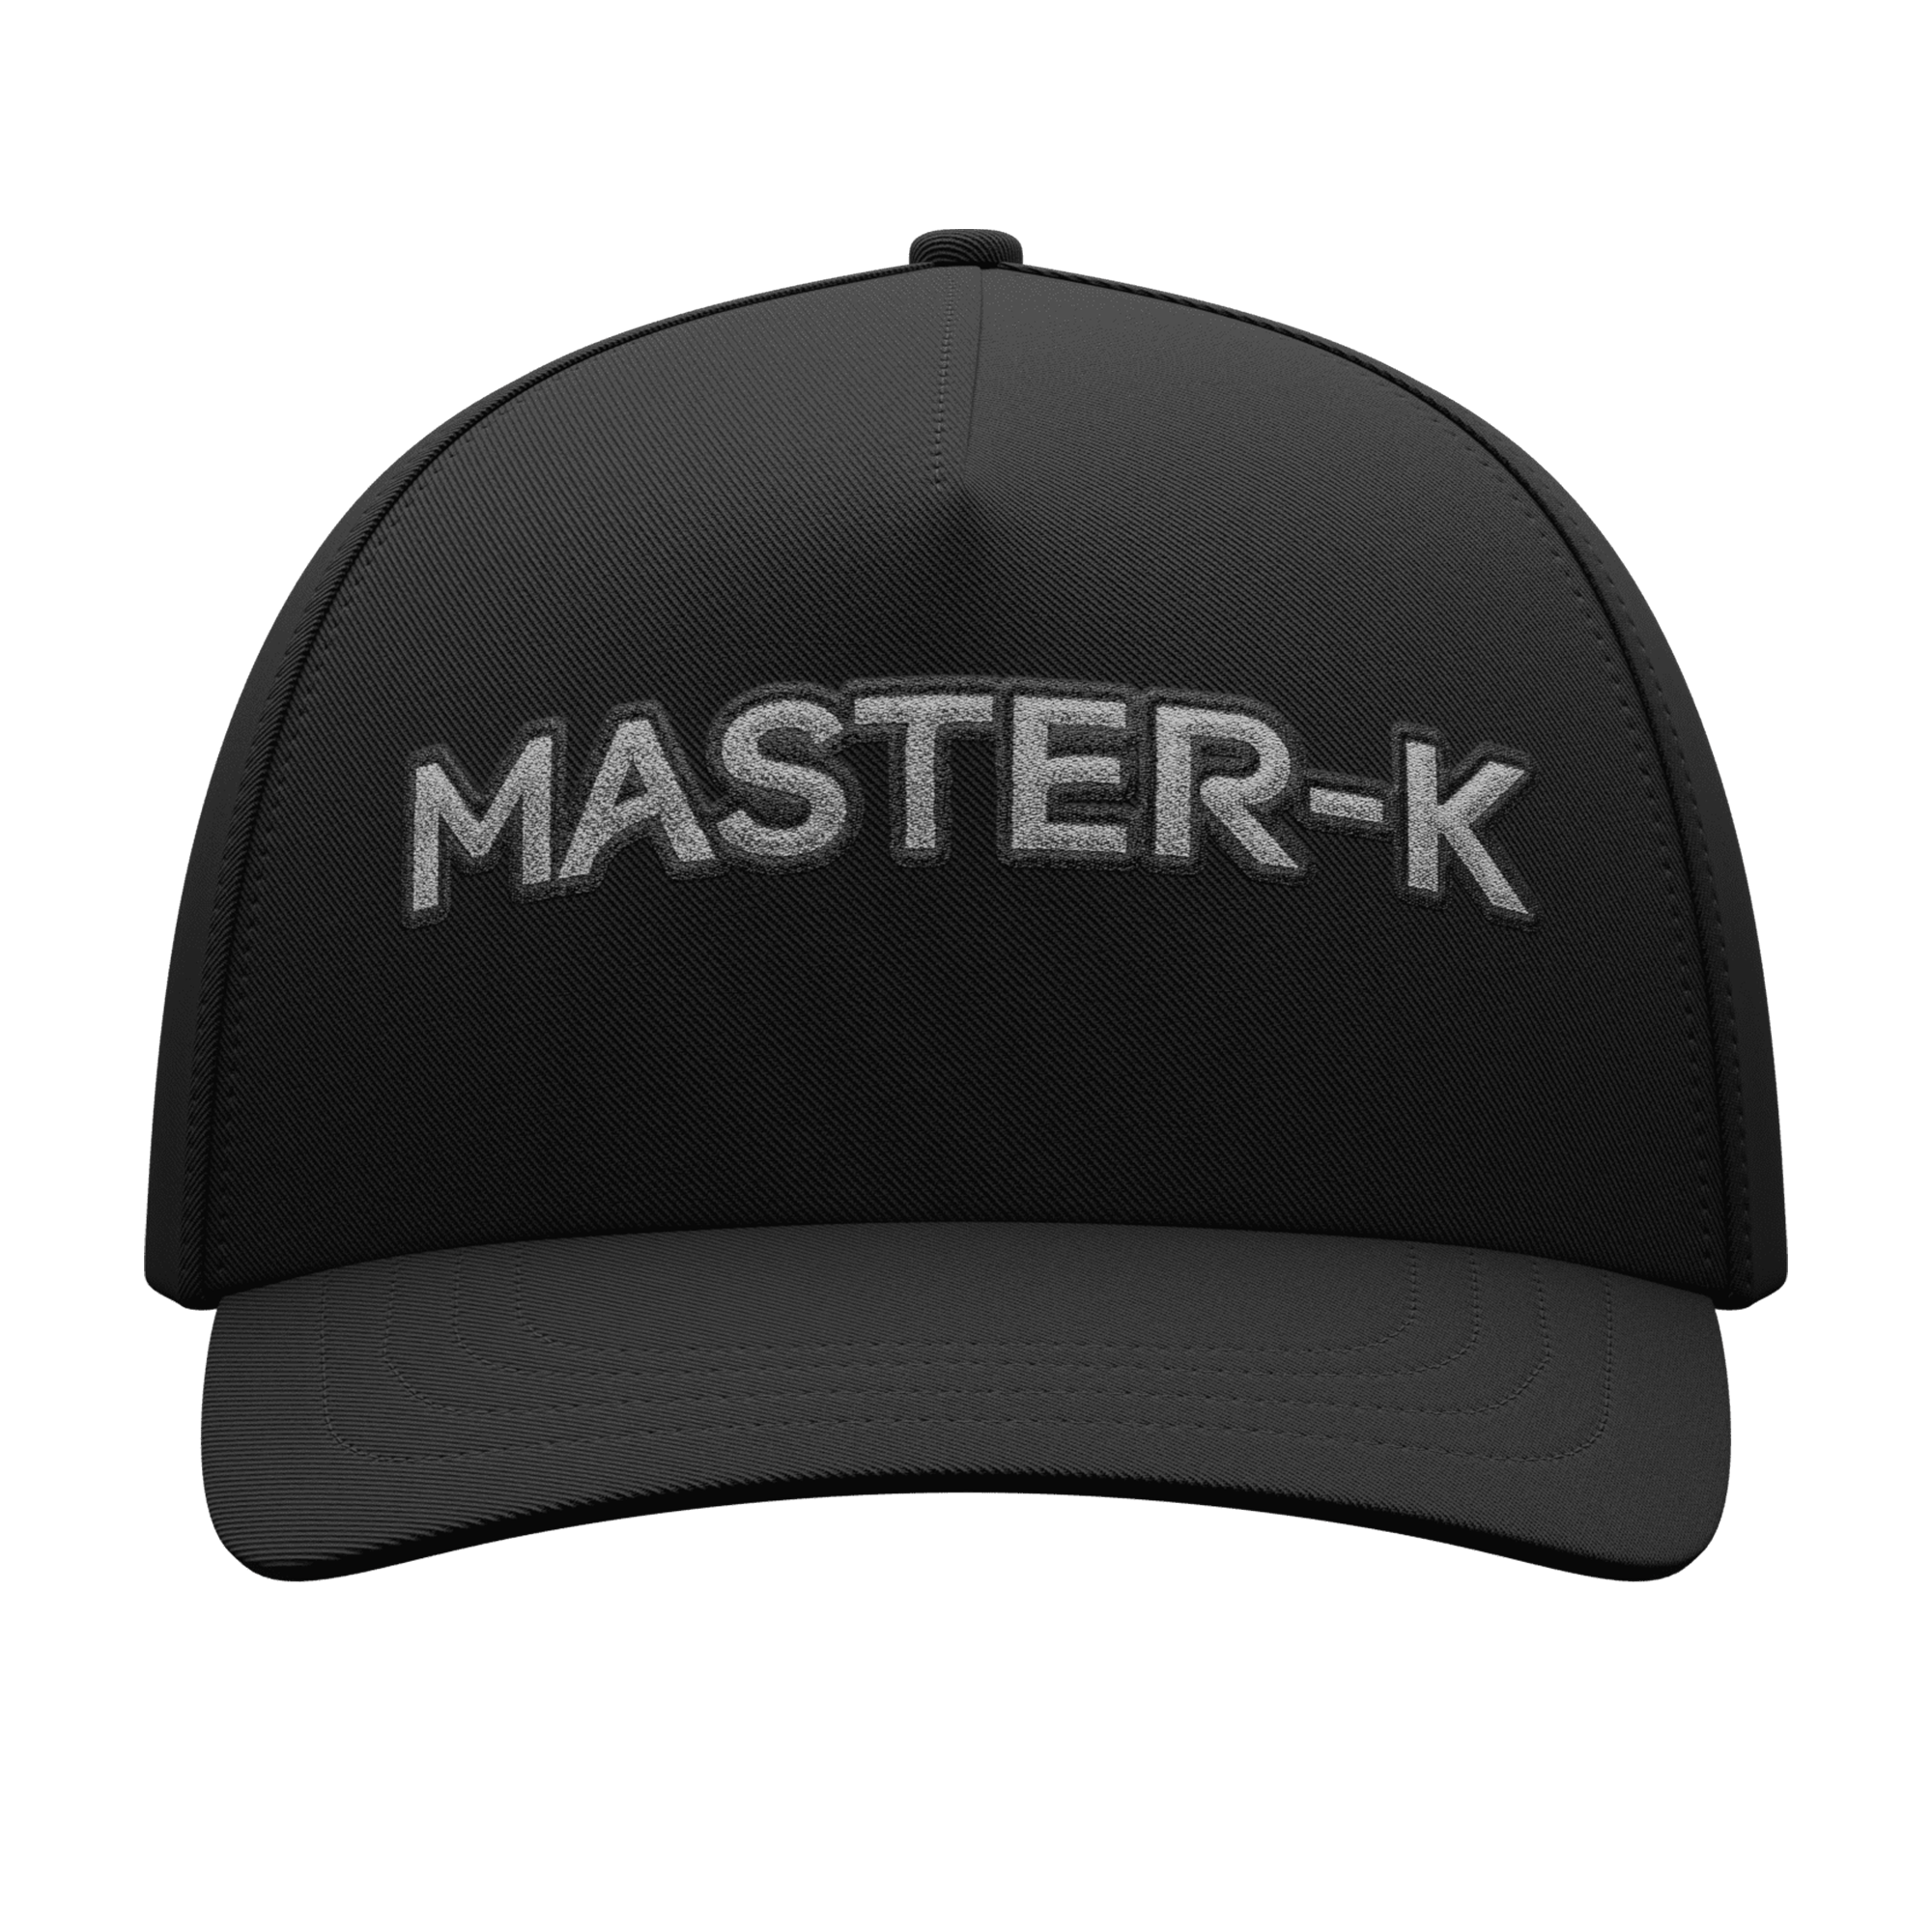 Classic Master Cap / Black